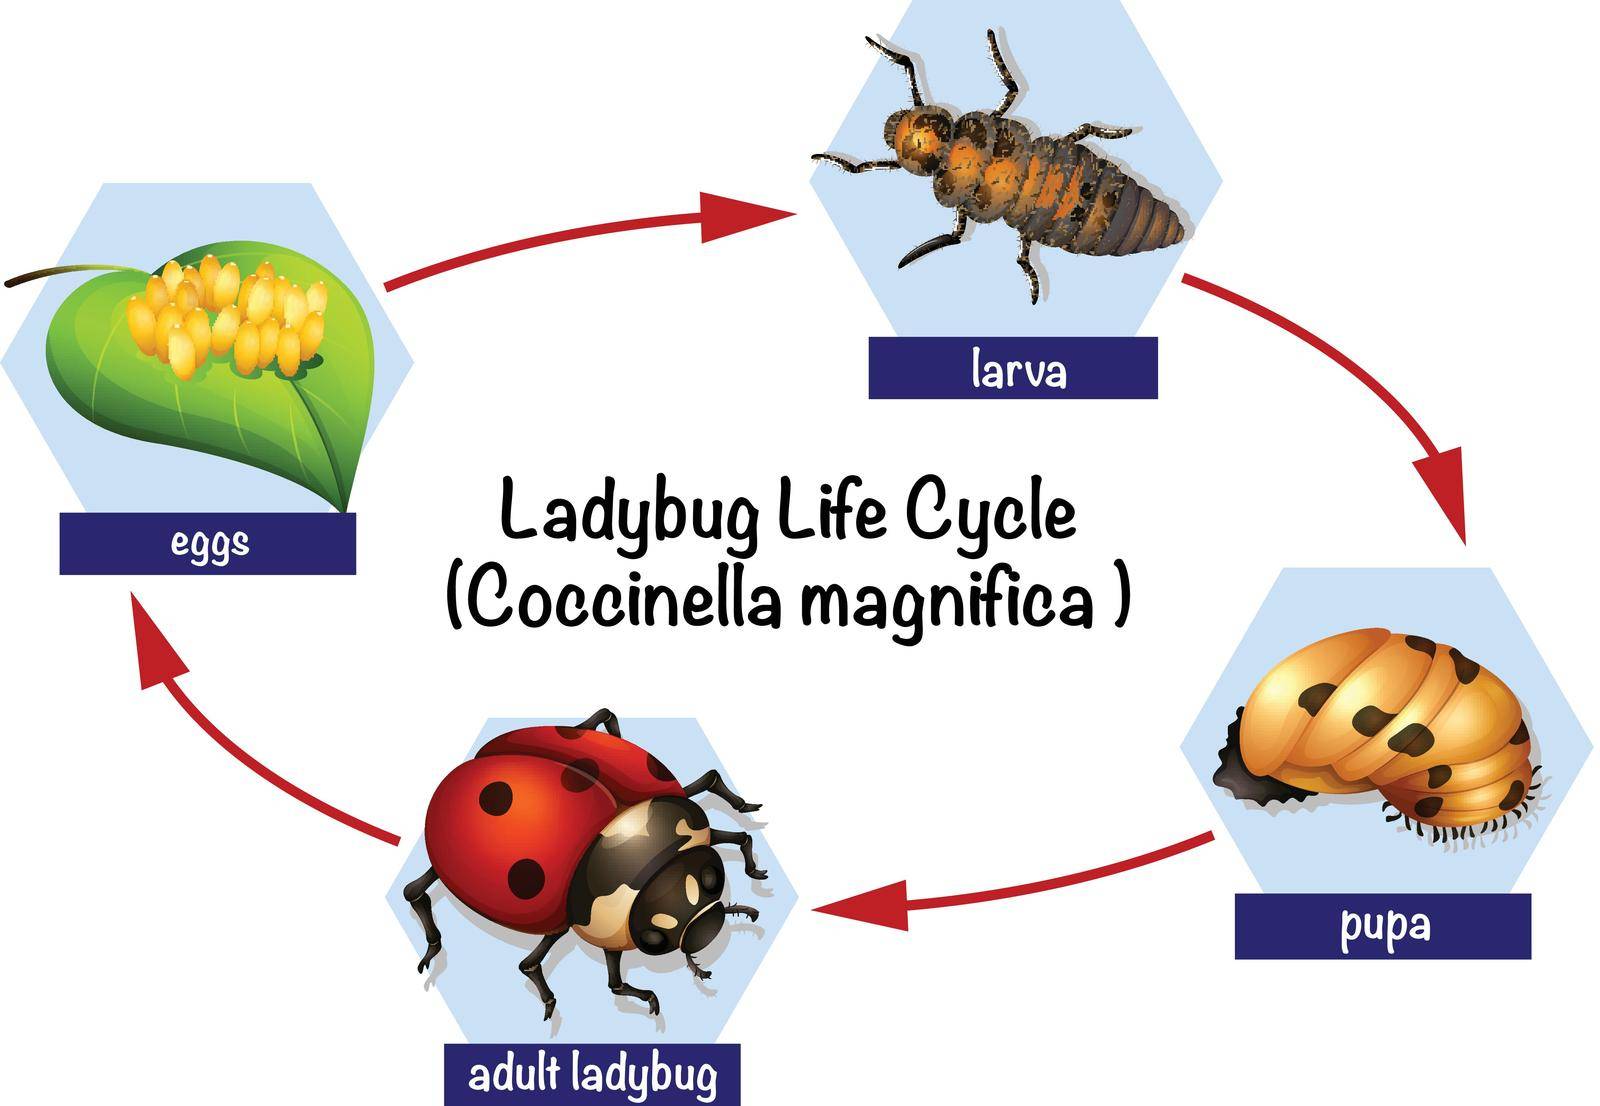 A ladybug life cycle by iimages